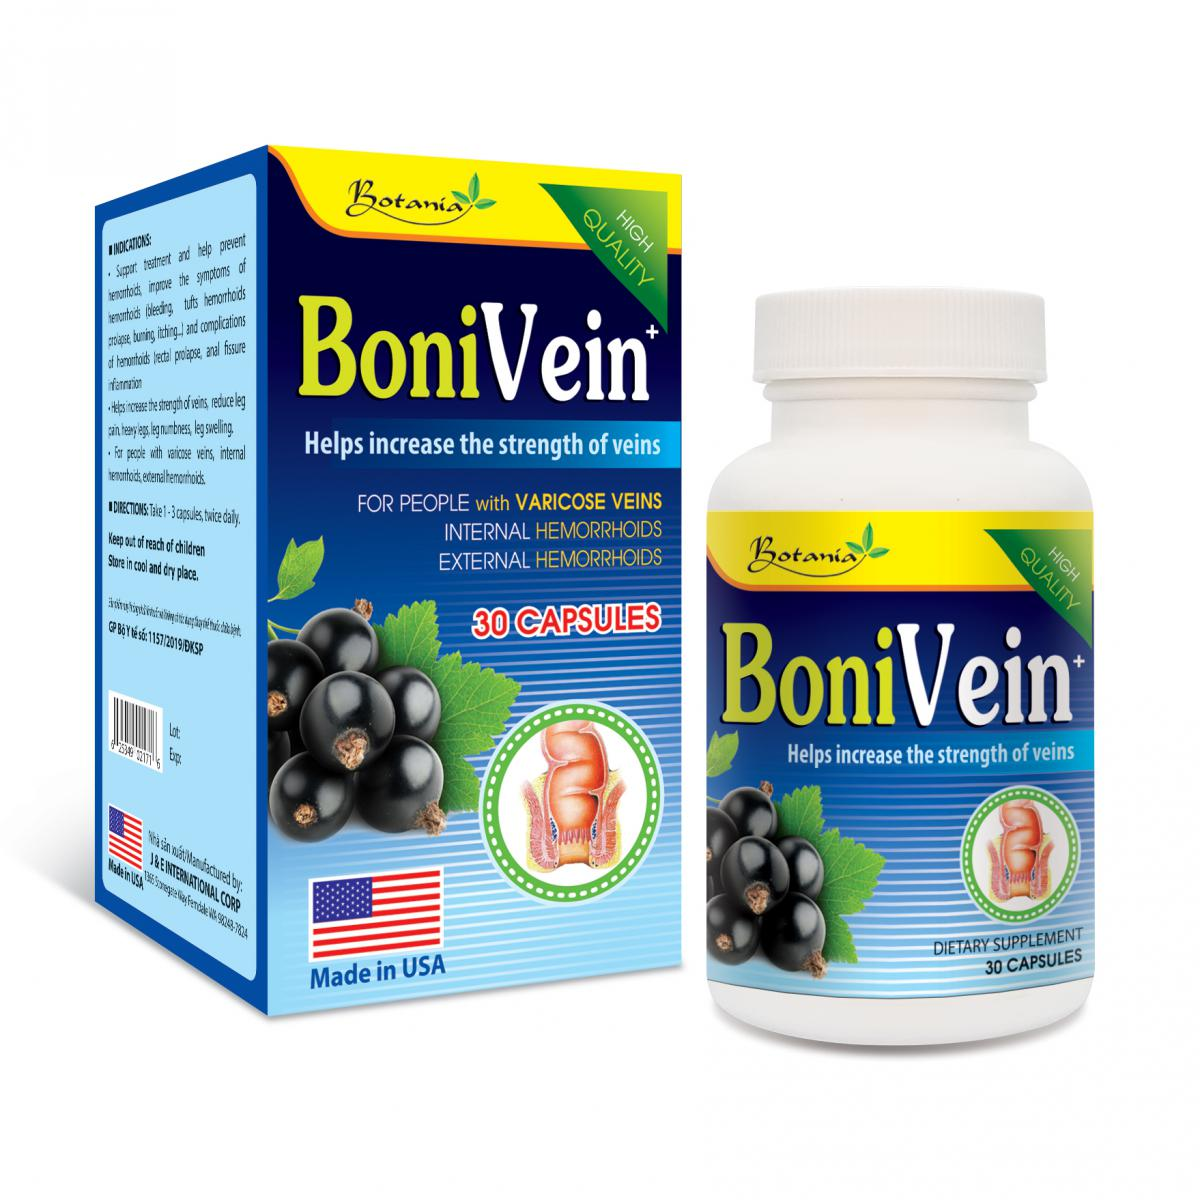 BoniVein trị suy giãn tĩnh mạch có tốt không? Thông tin chi tiết sản phẩm